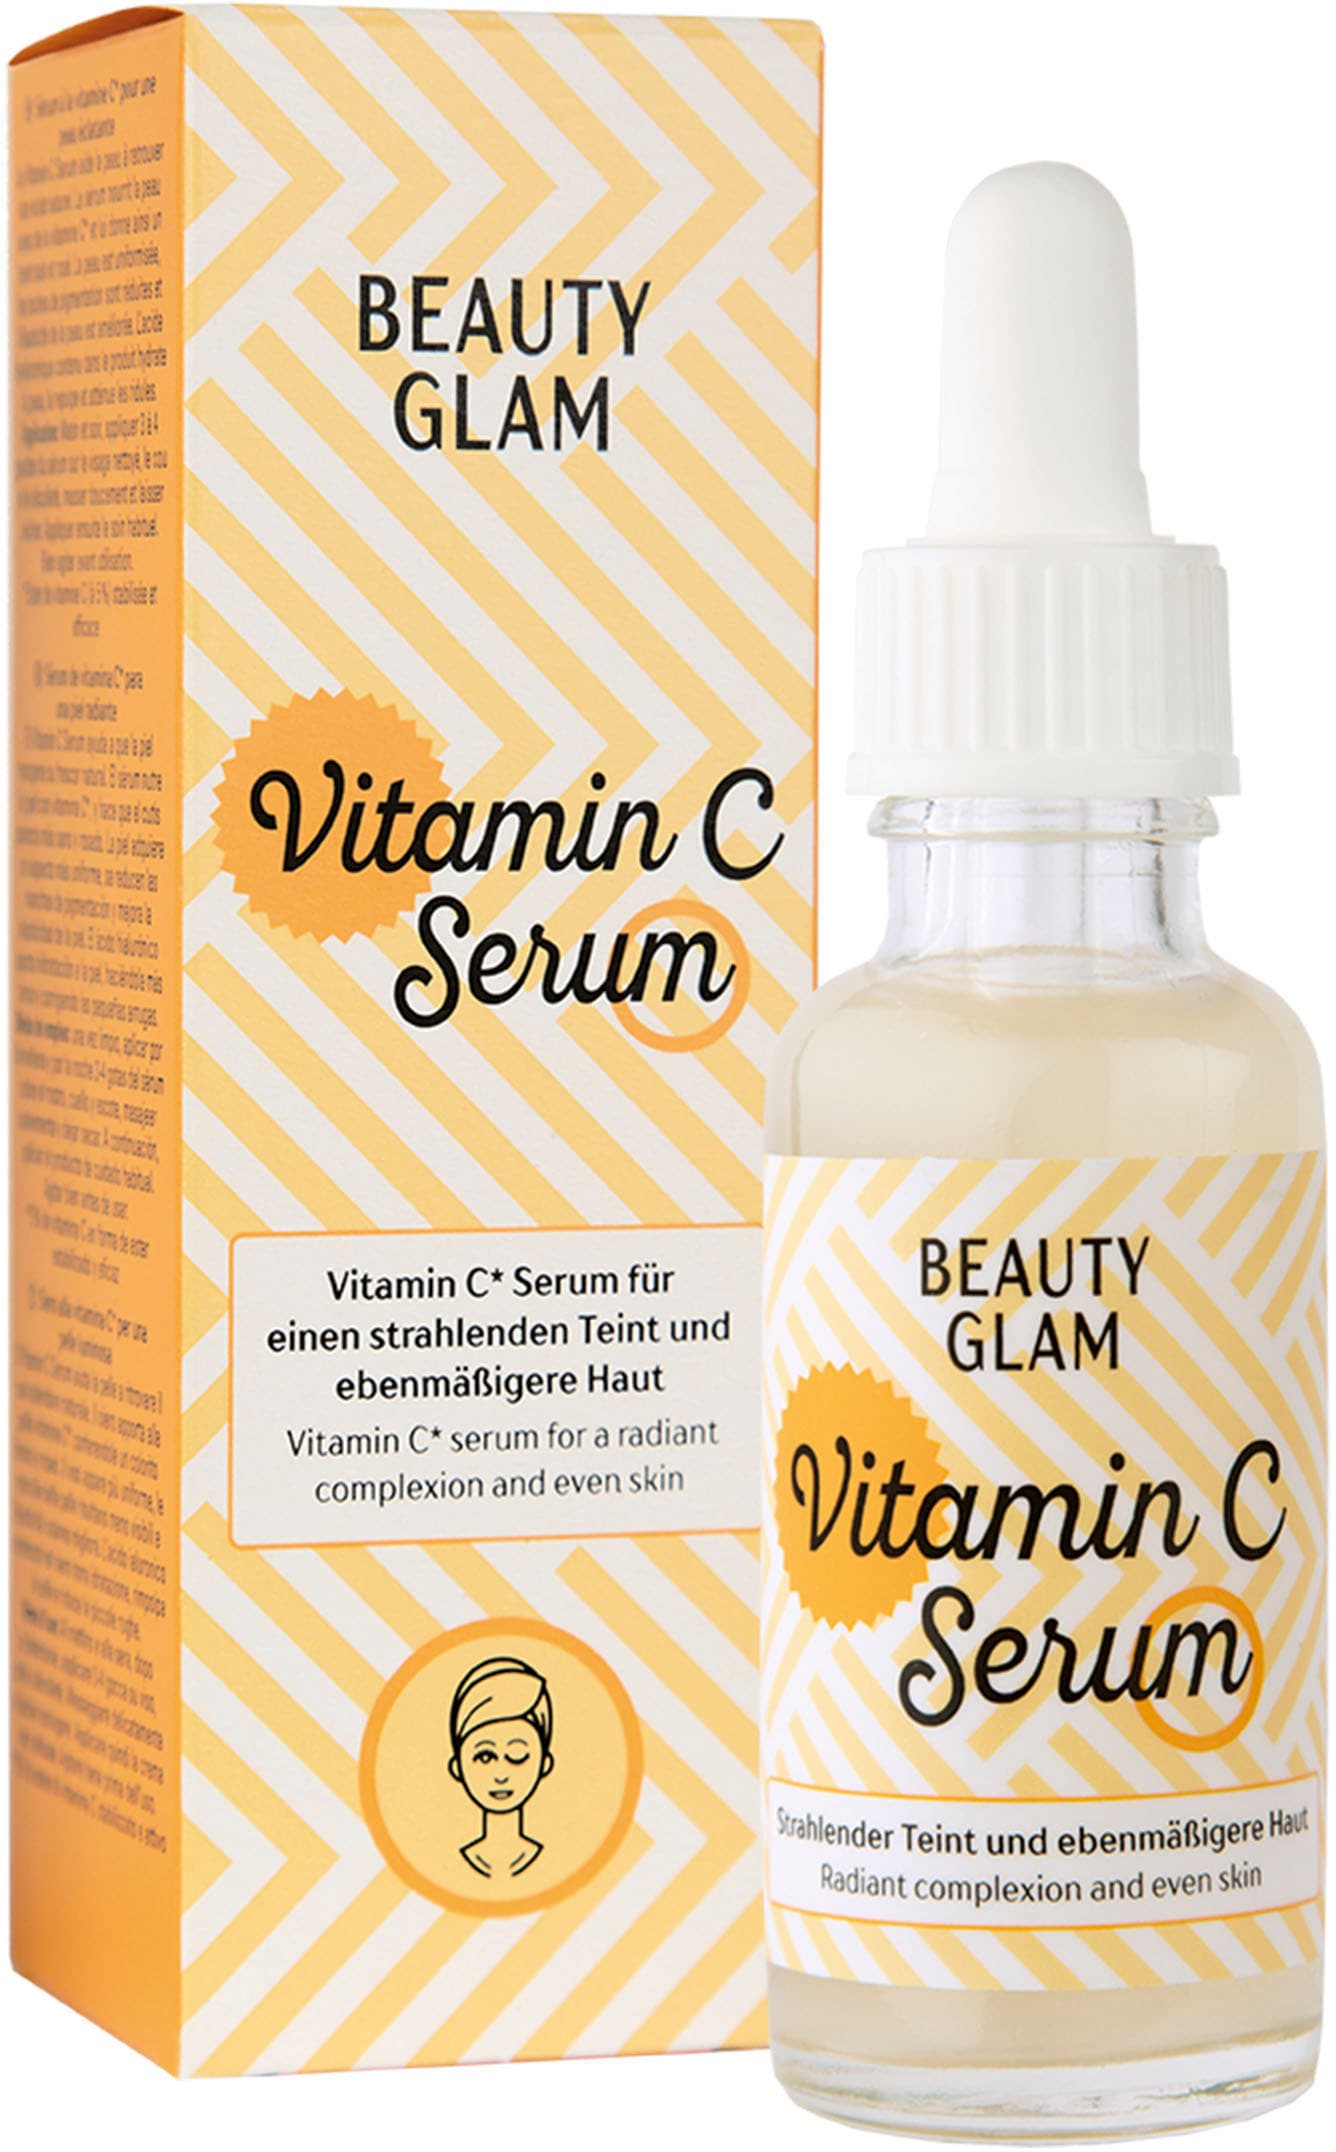 BEAUTY GLAM Gesichtsserum »Beauty Vitamin Glam OTTOversand Serum« bei C